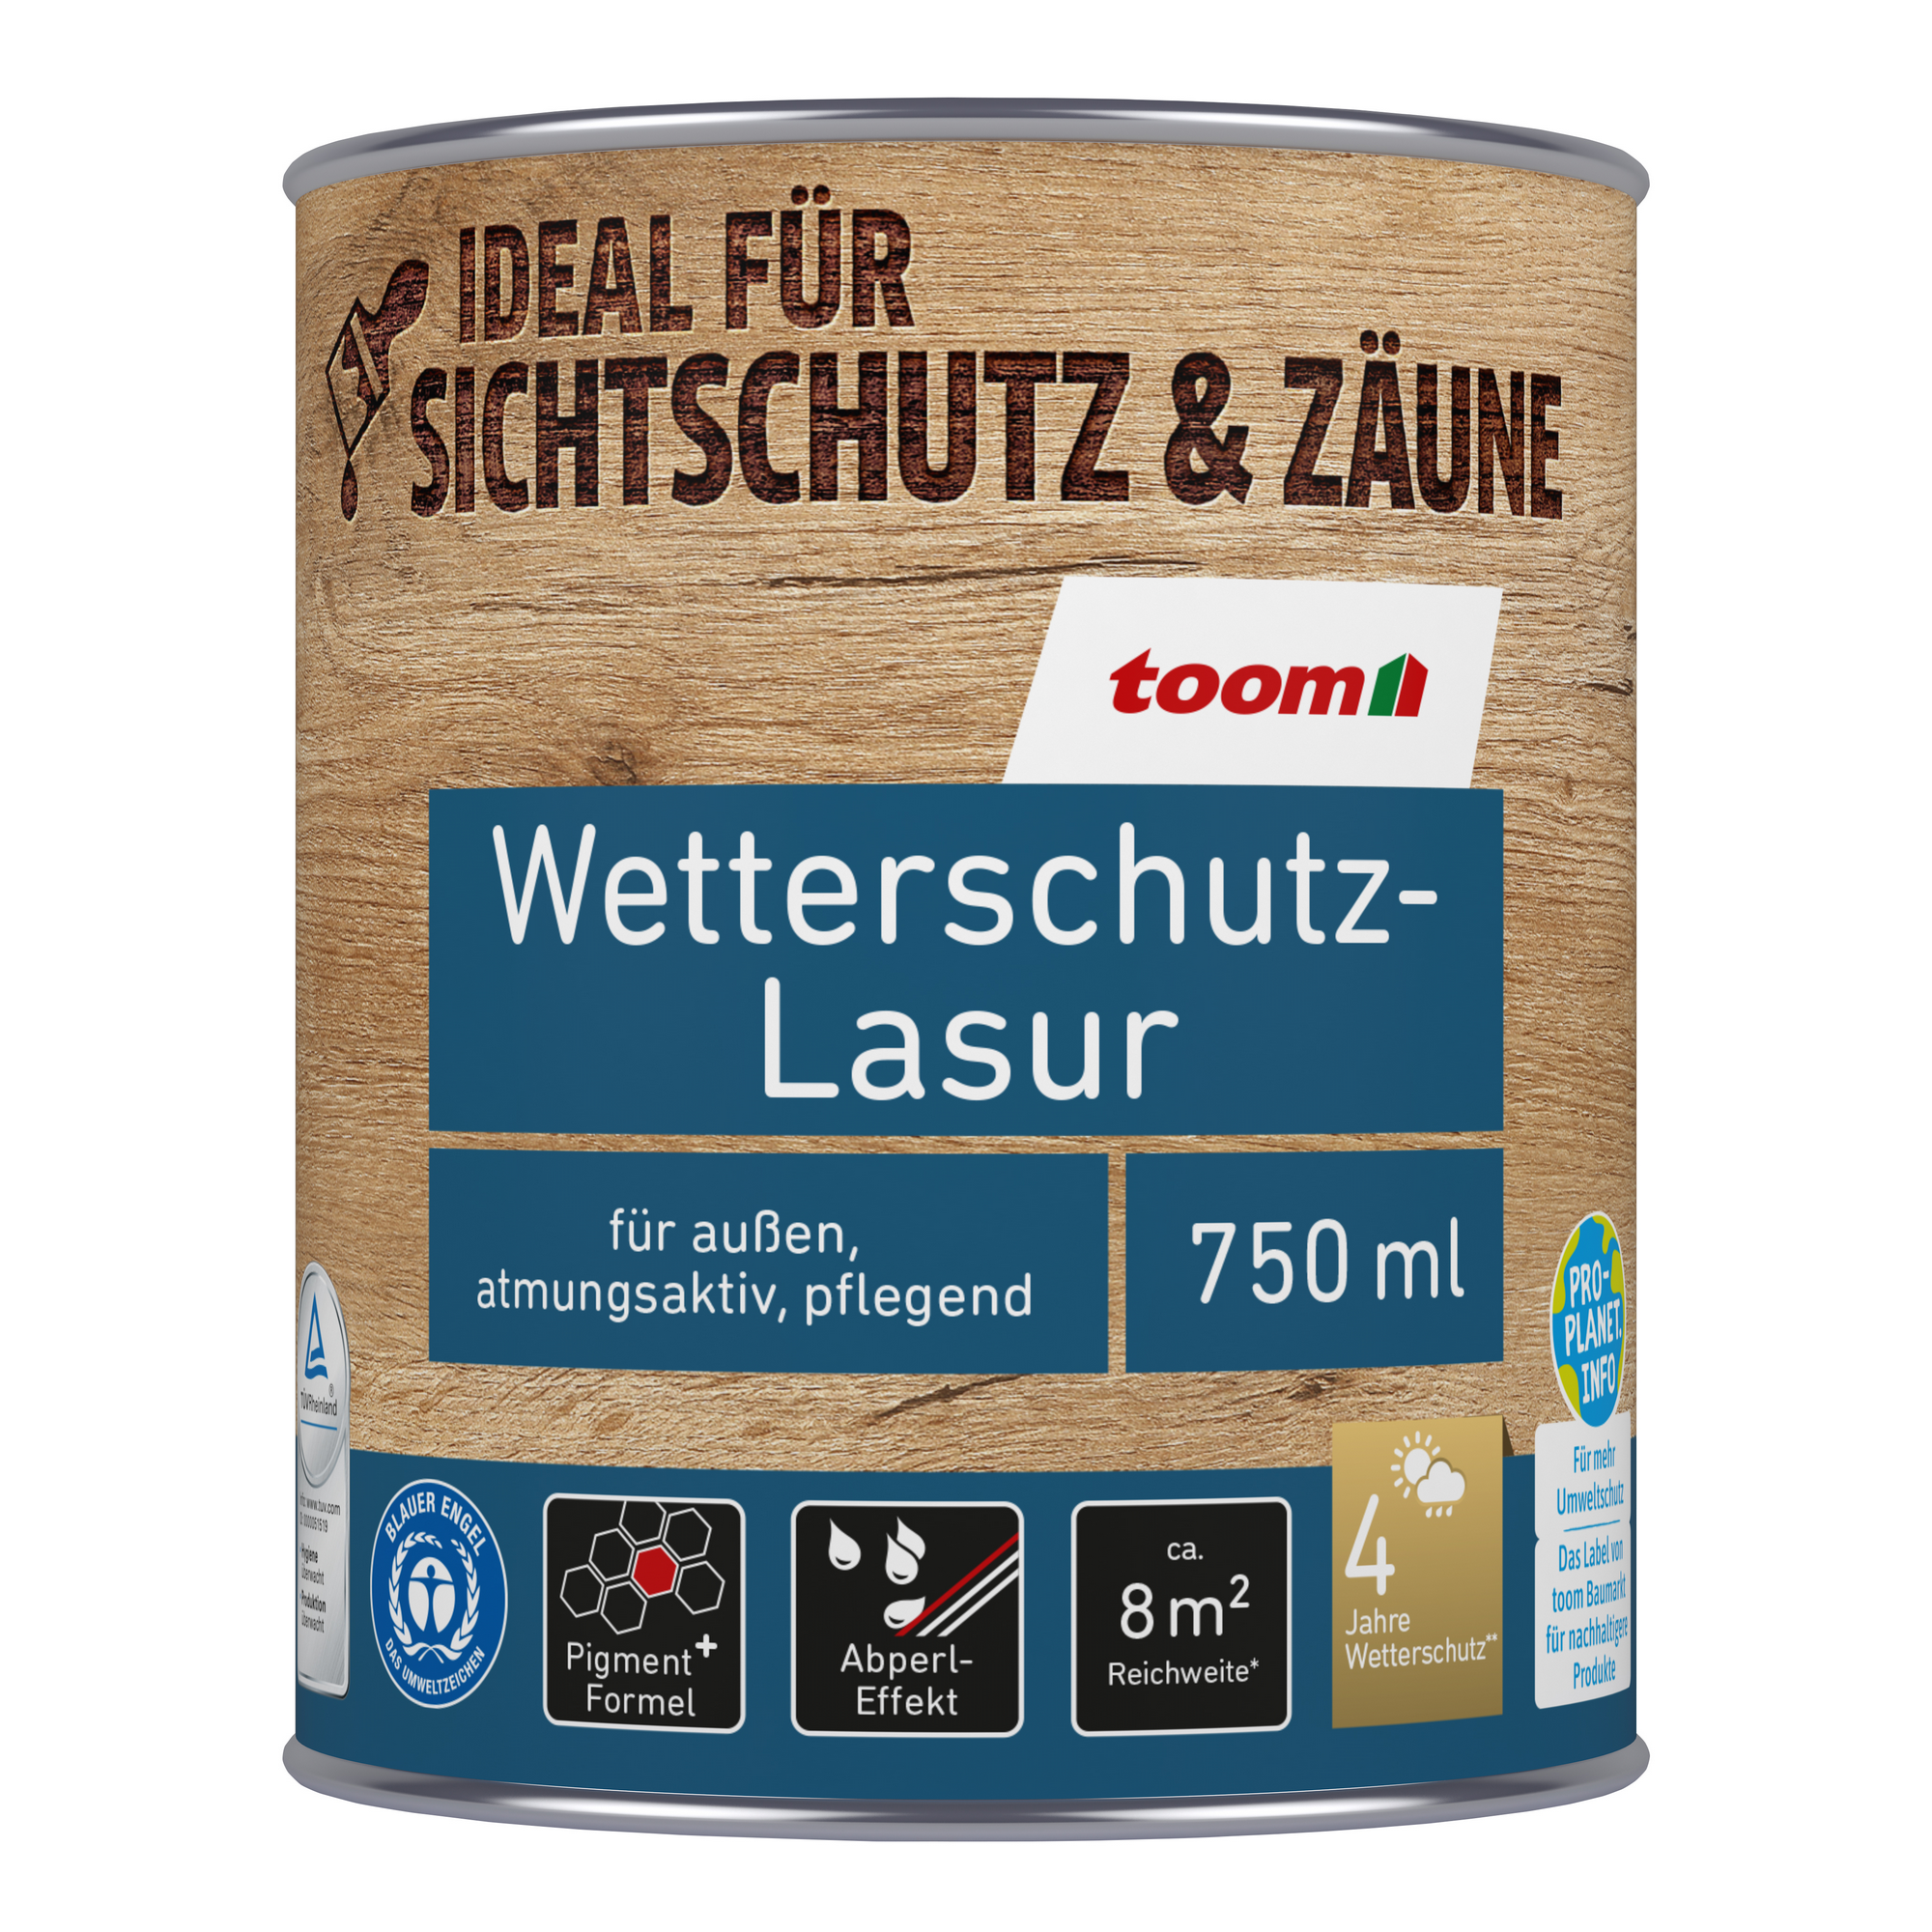 Wetterschutz-Lasur anthrazitfarben 750 ml + product picture